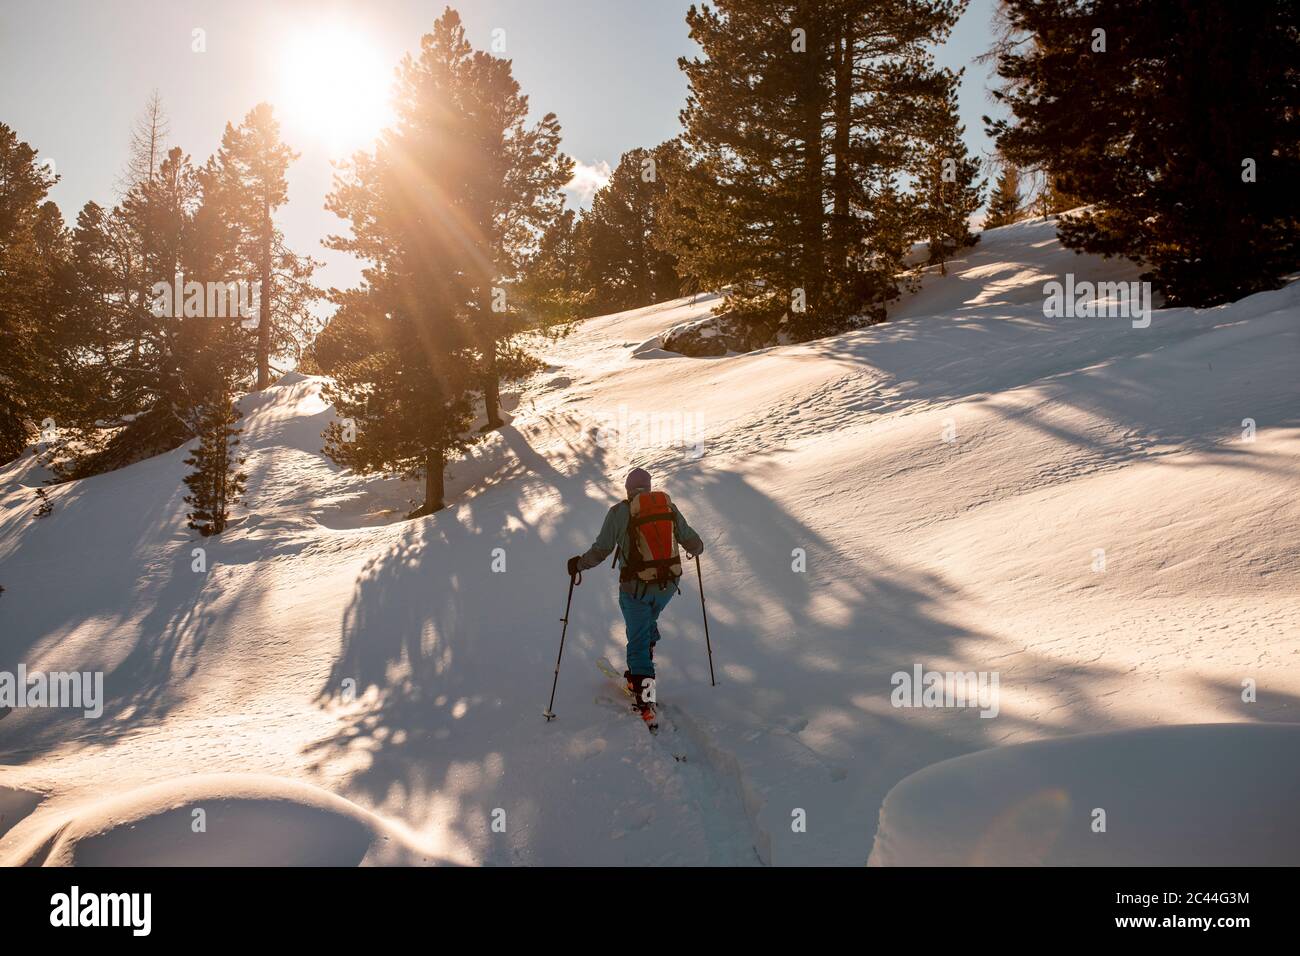 Autriche, Carinthie, Reichenau, Nockberge, Falkert, vue arrière de l'homme ski de randonnée au coucher du soleil Banque D'Images